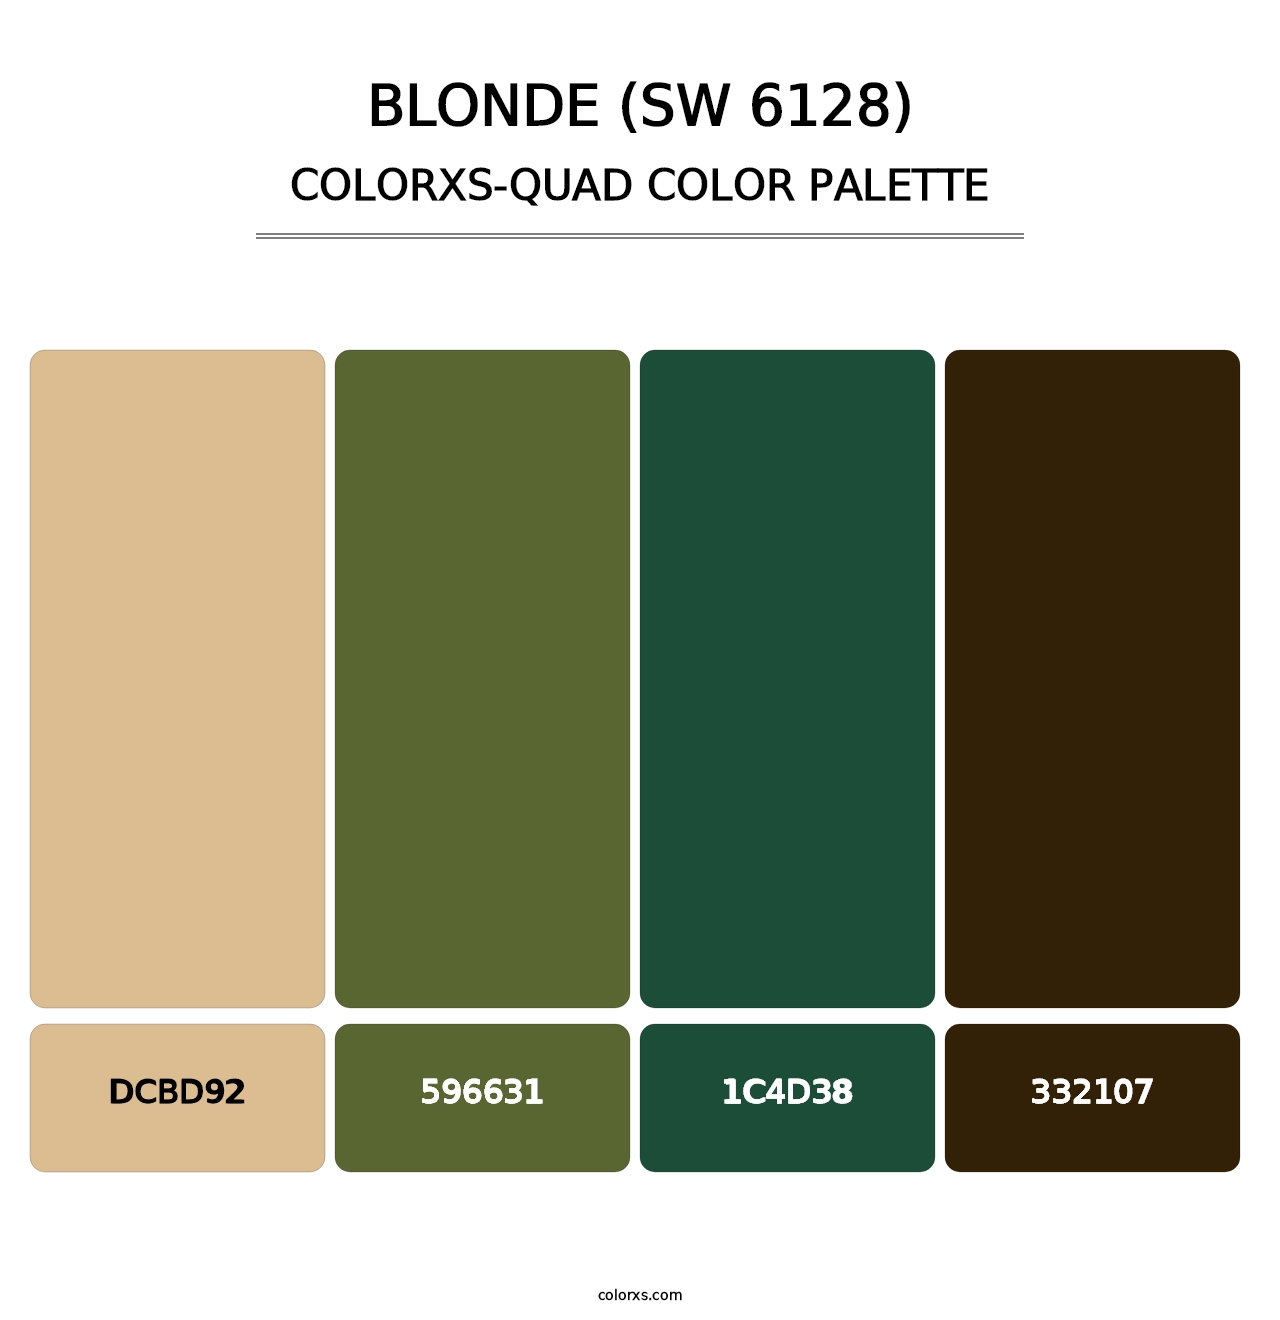 Blonde (SW 6128) - Colorxs Quad Palette